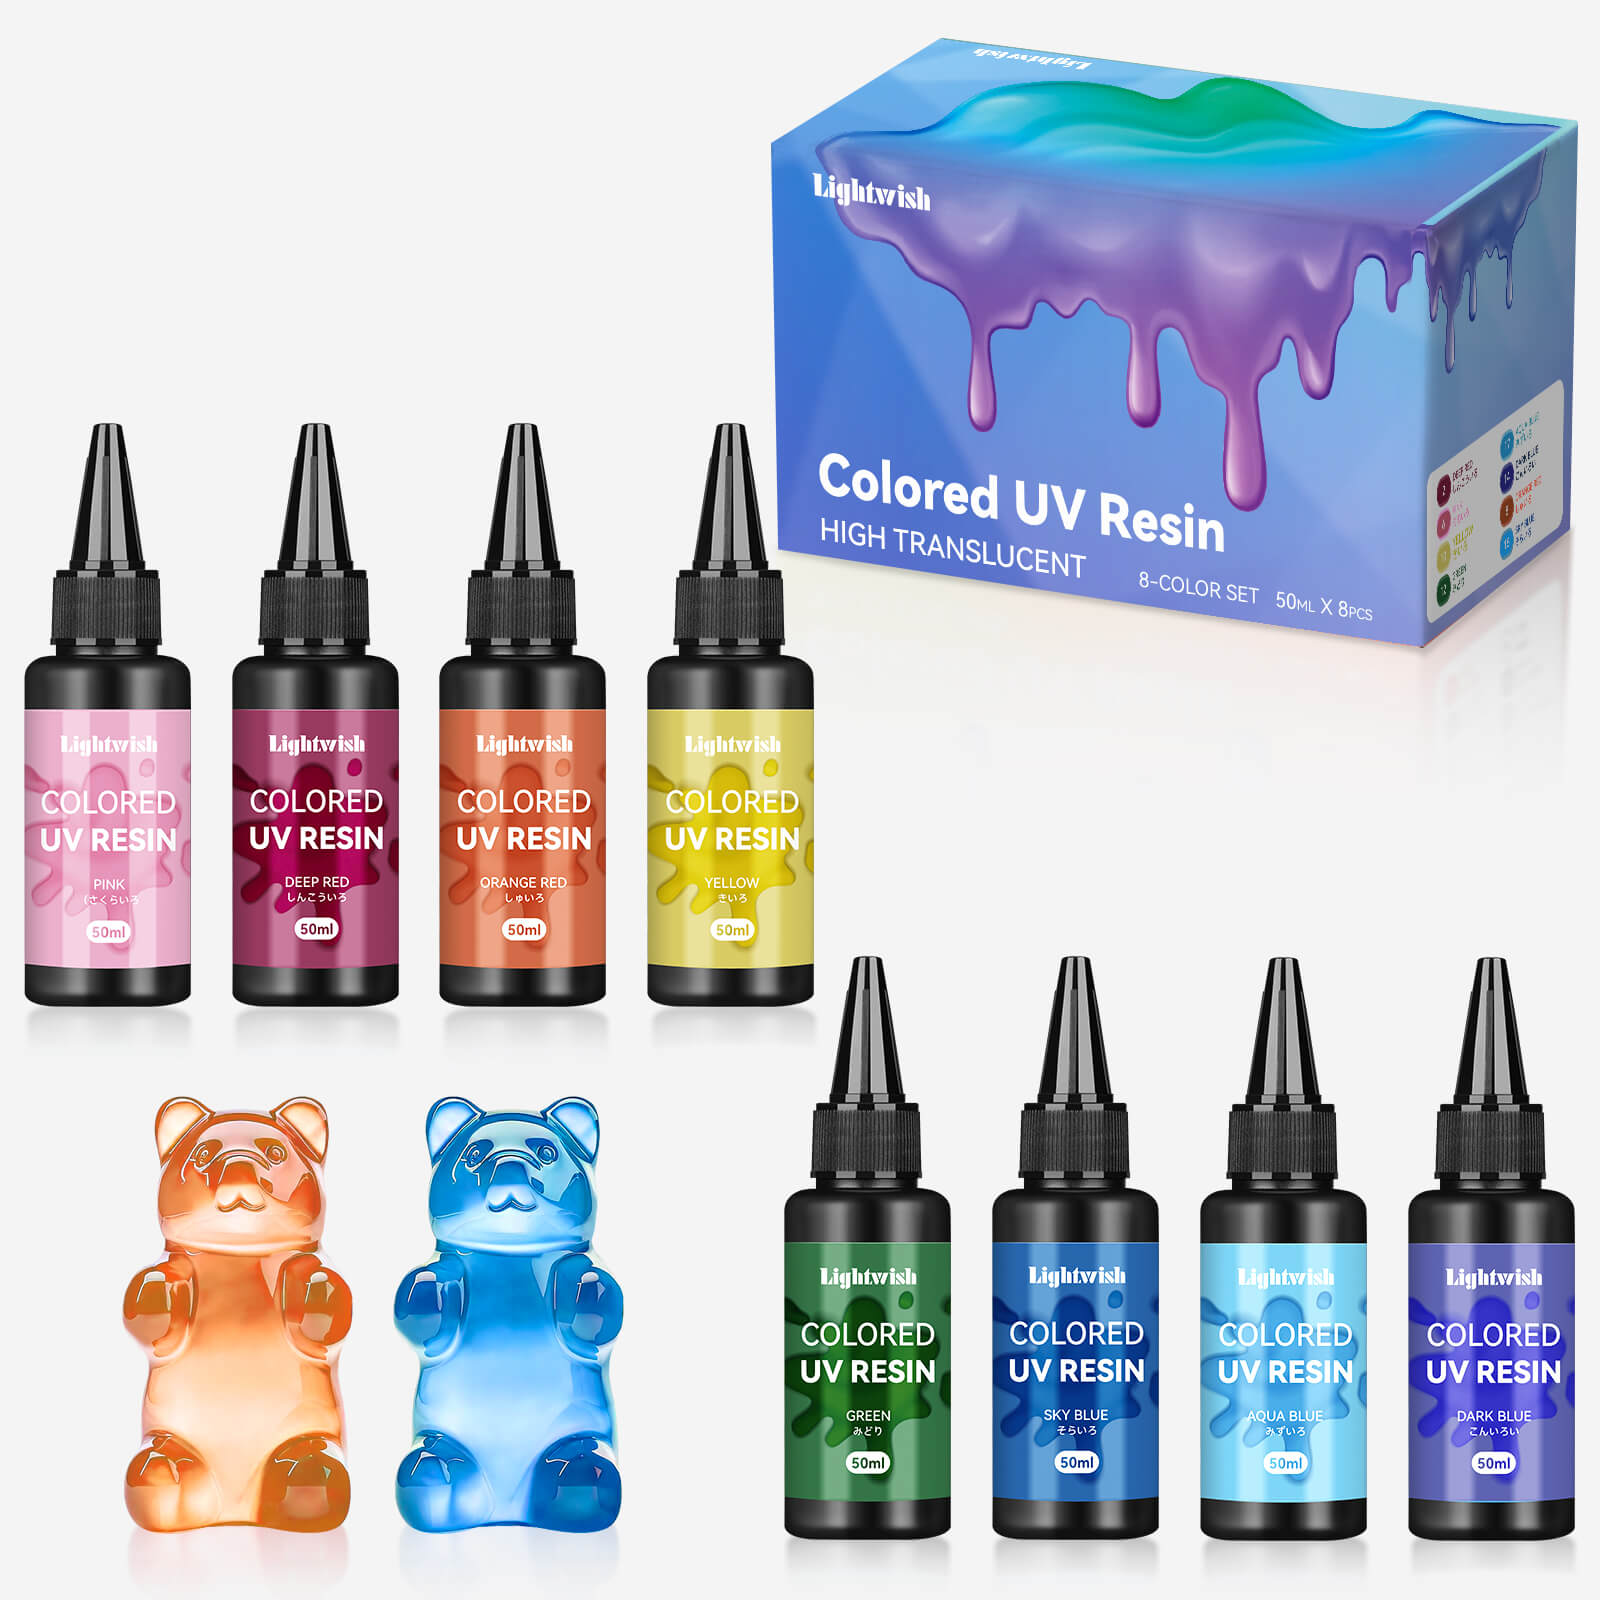 Résines UV colorées Lightwish, haute transparence 8 couleurs